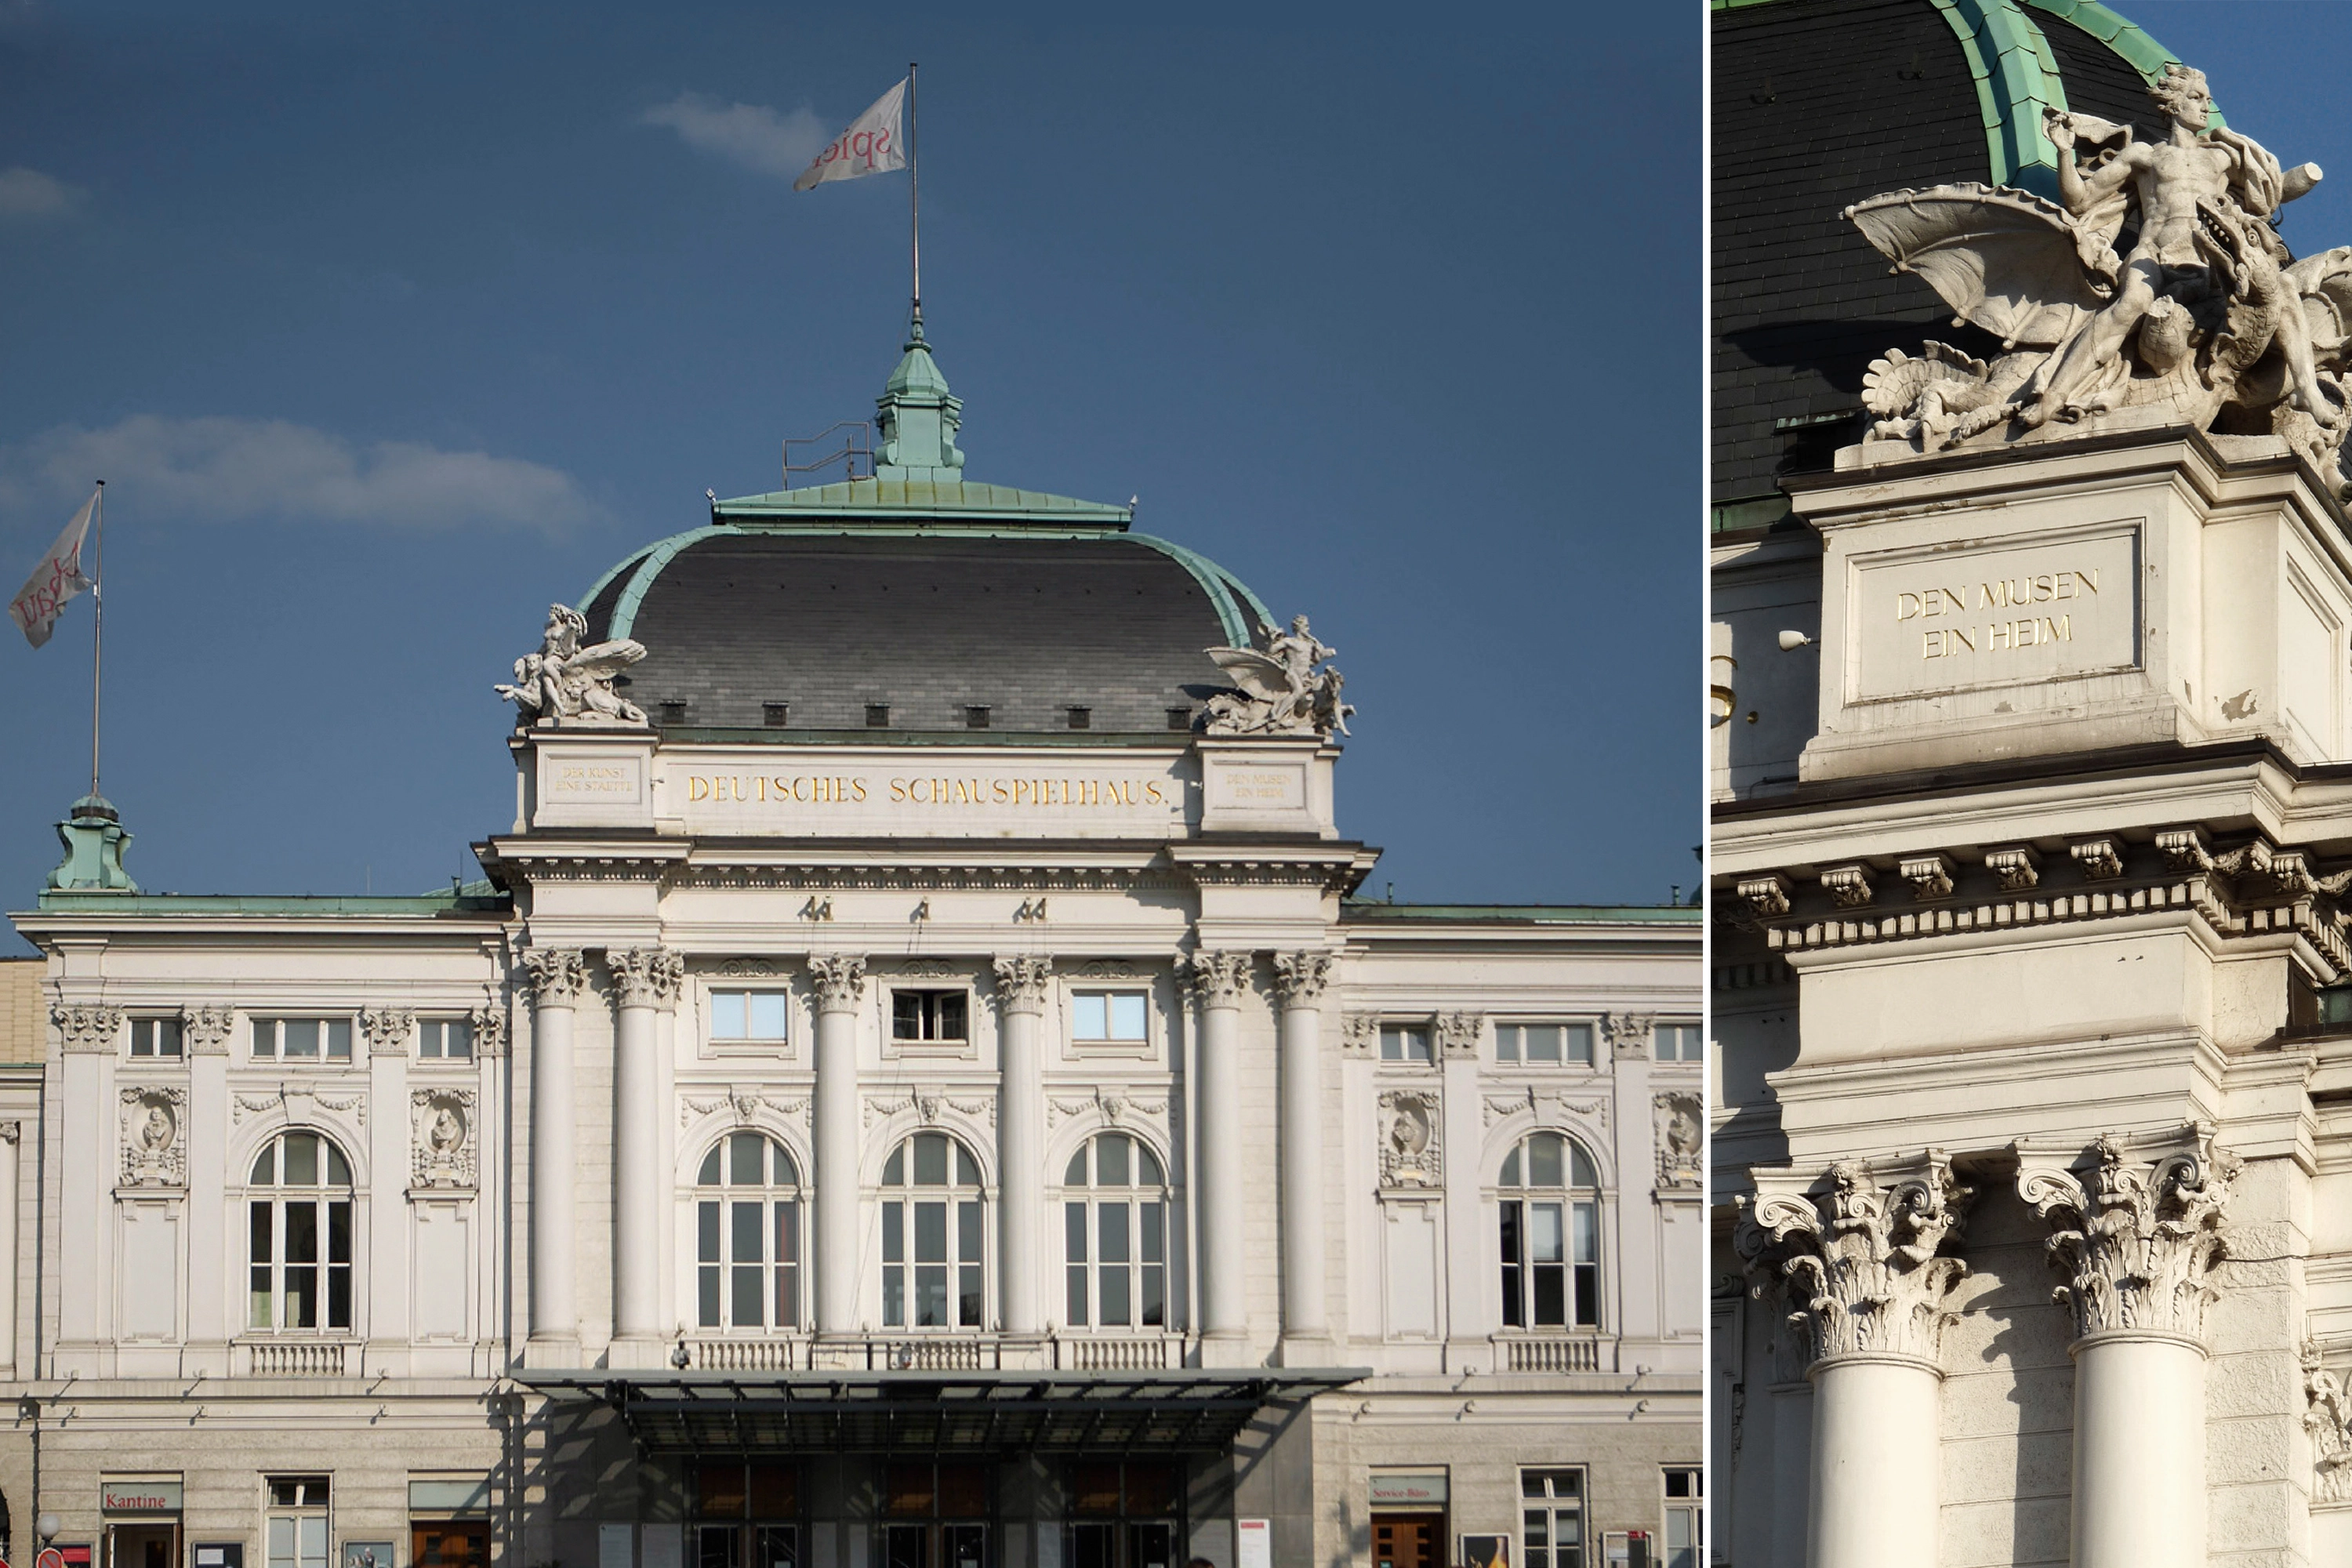 SSH (Wettbewerbe und Entwürfe + Umbau und Sanierung) Deutsches Schauspielhaus Hamburg